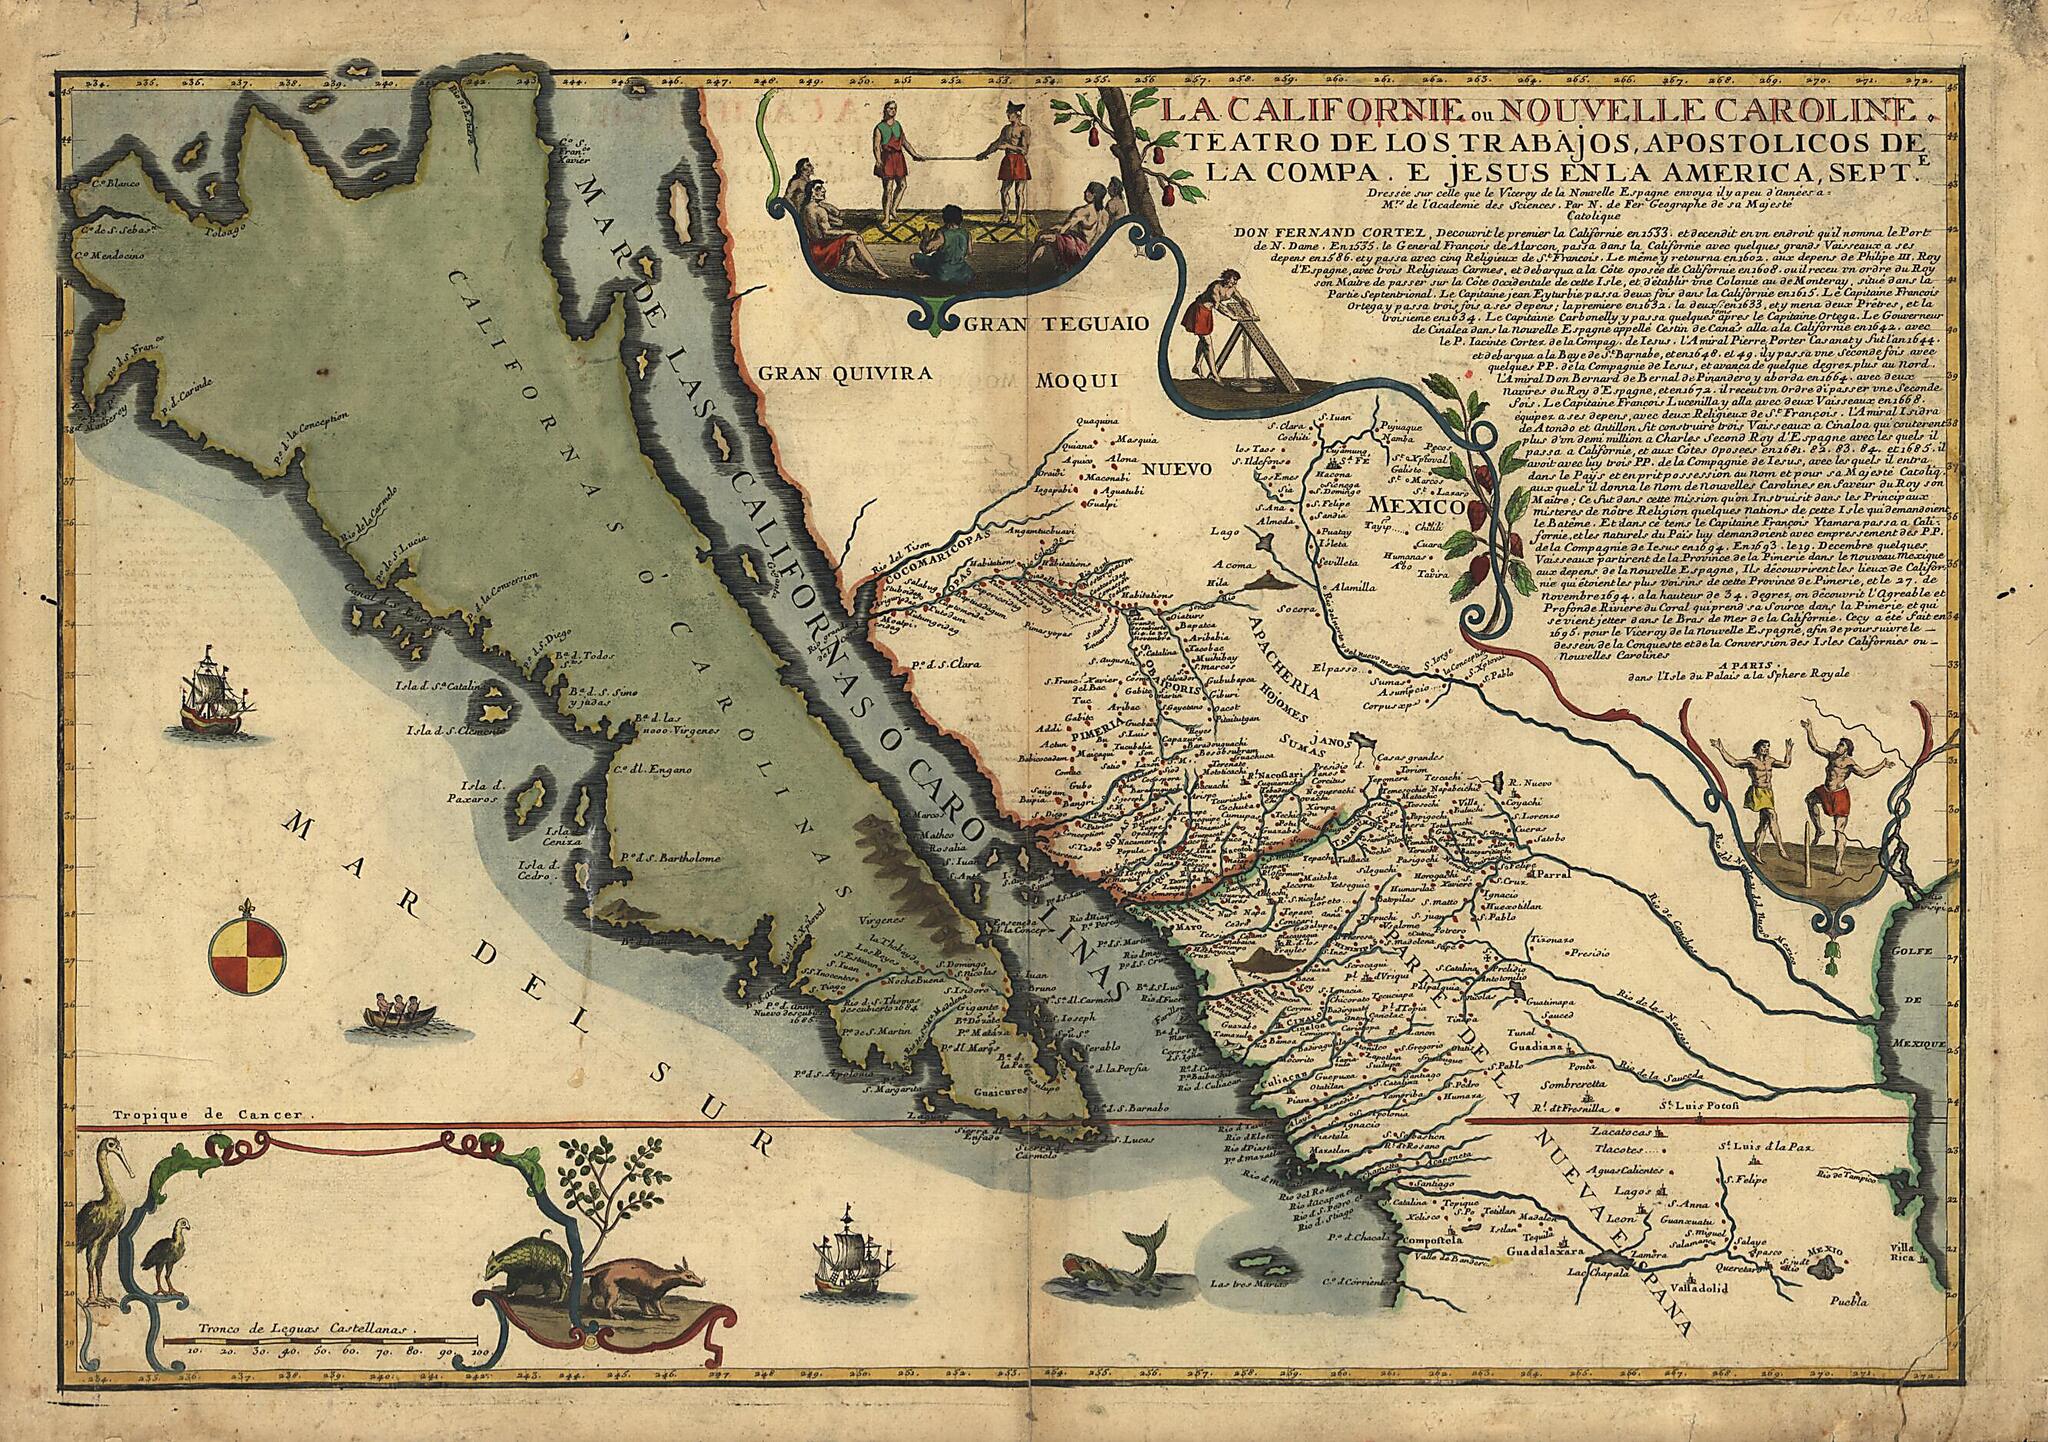 This old map of La Californie Ou Nouvelle Caroline : Teatro De Los Trabajos, Apostolicos De La Compa. E Jesus En La America Septe from 1720 was created by Nicolas De Fer in 1720